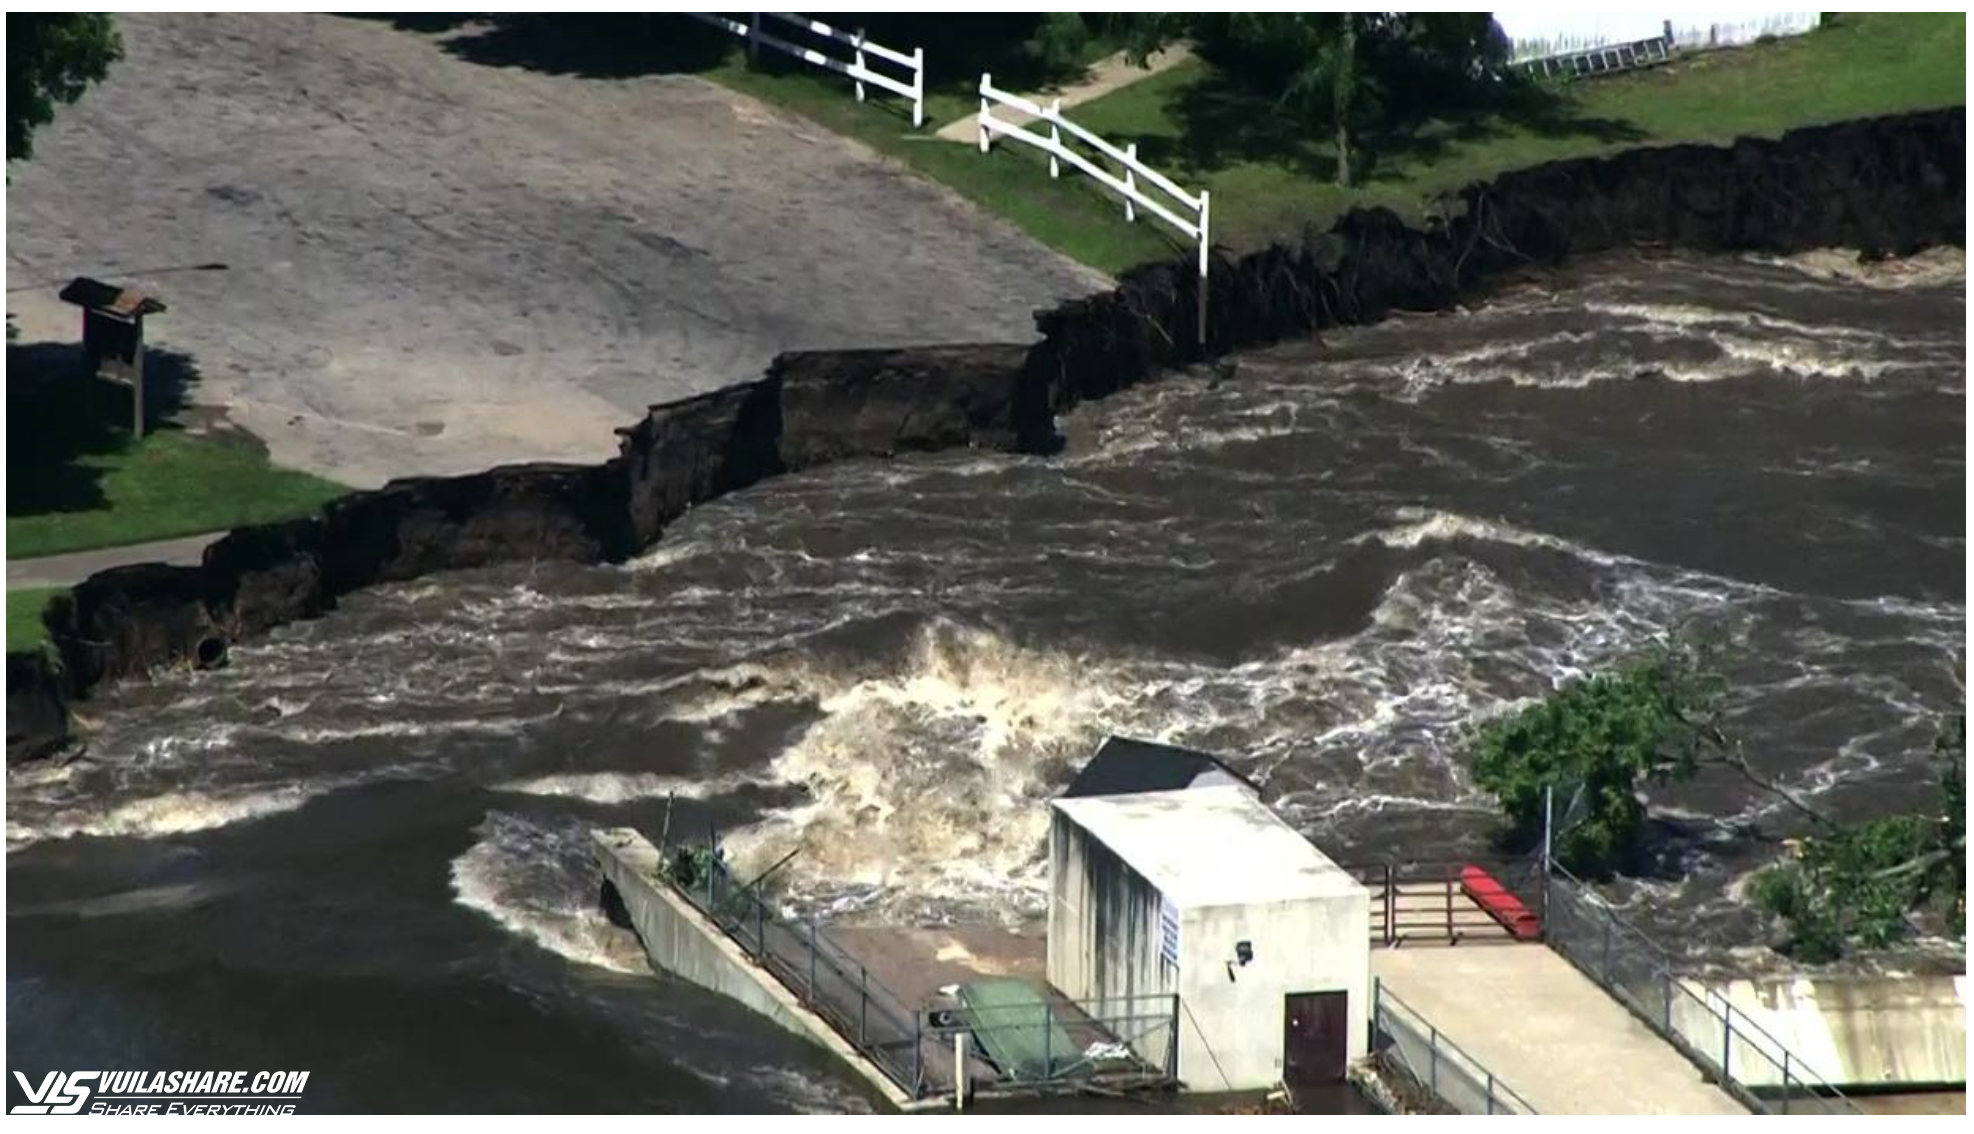 Đập nước sắp vỡ vì lũ lớn, tiểu bang Mỹ trong tình trạng báo động- Ảnh 2.